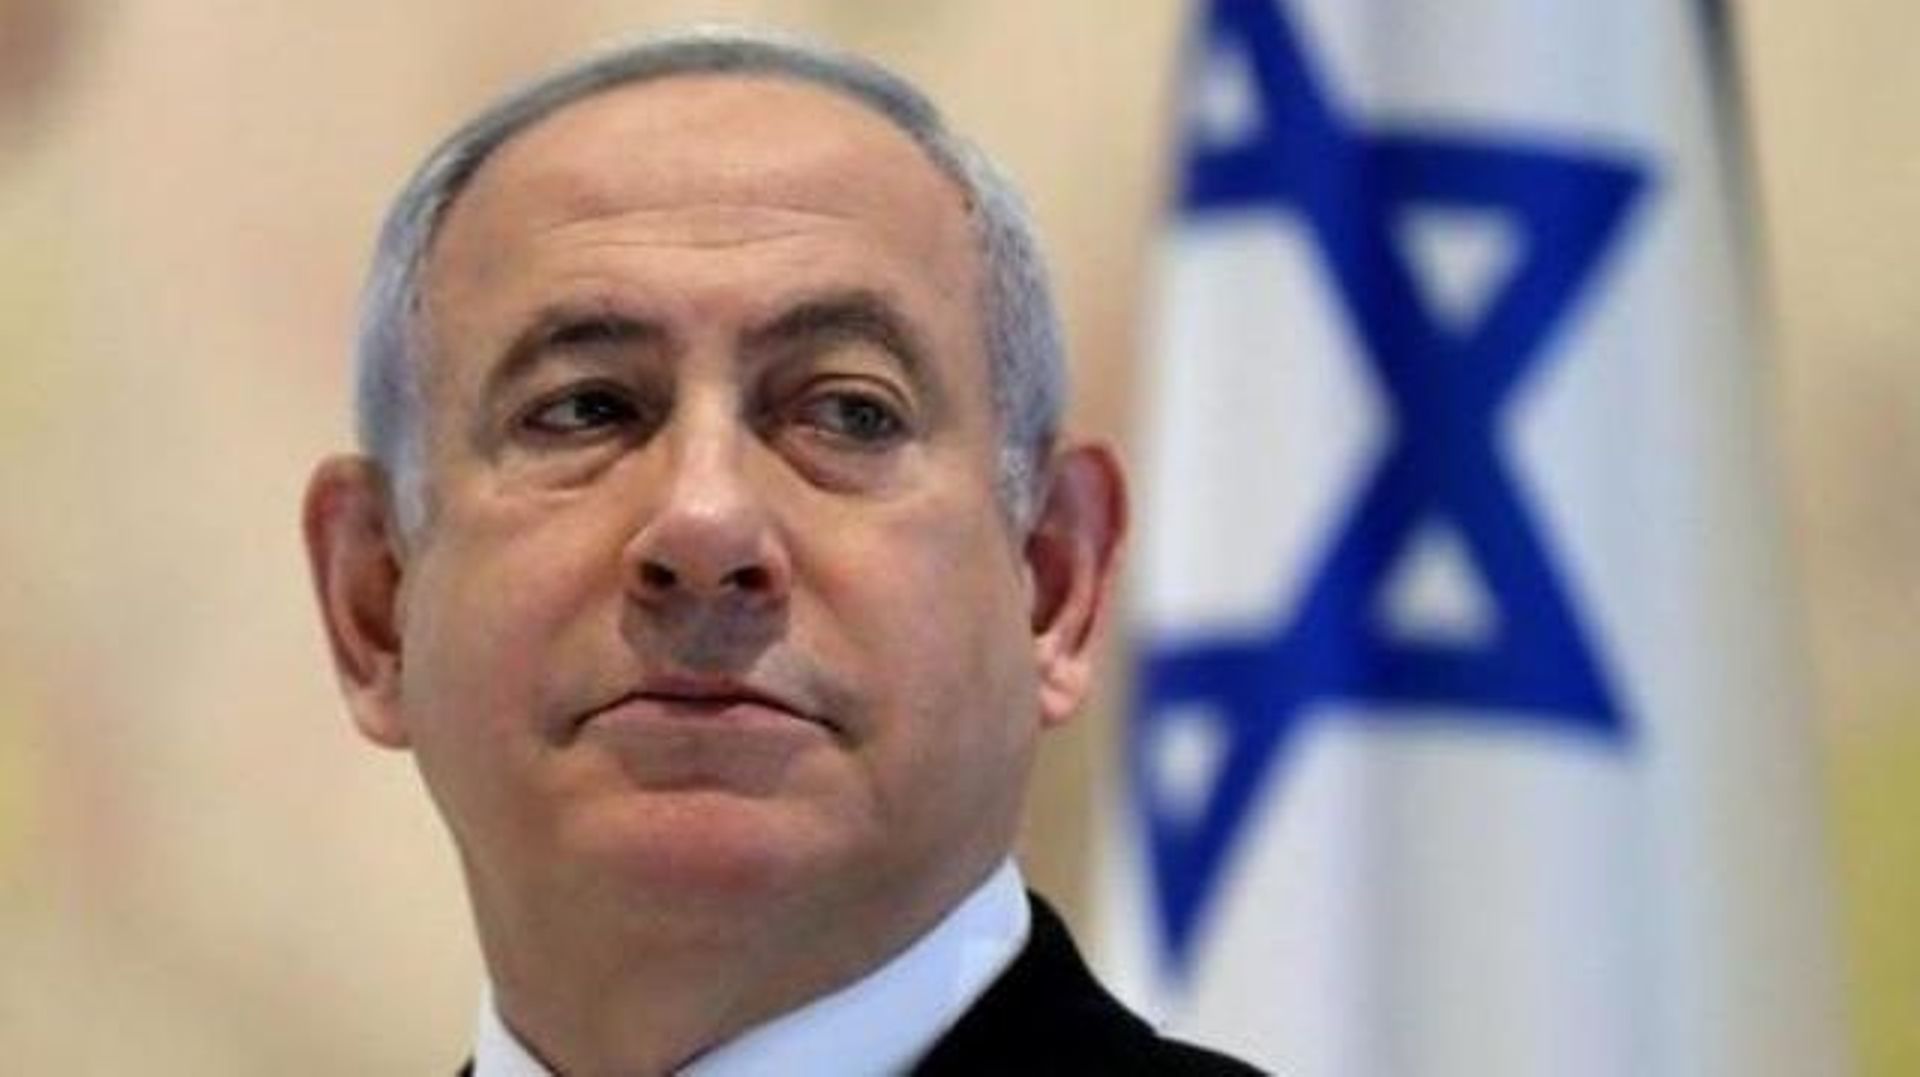 Israël discute en secret avec de nombreux leaders arabes pour normaliser les relations